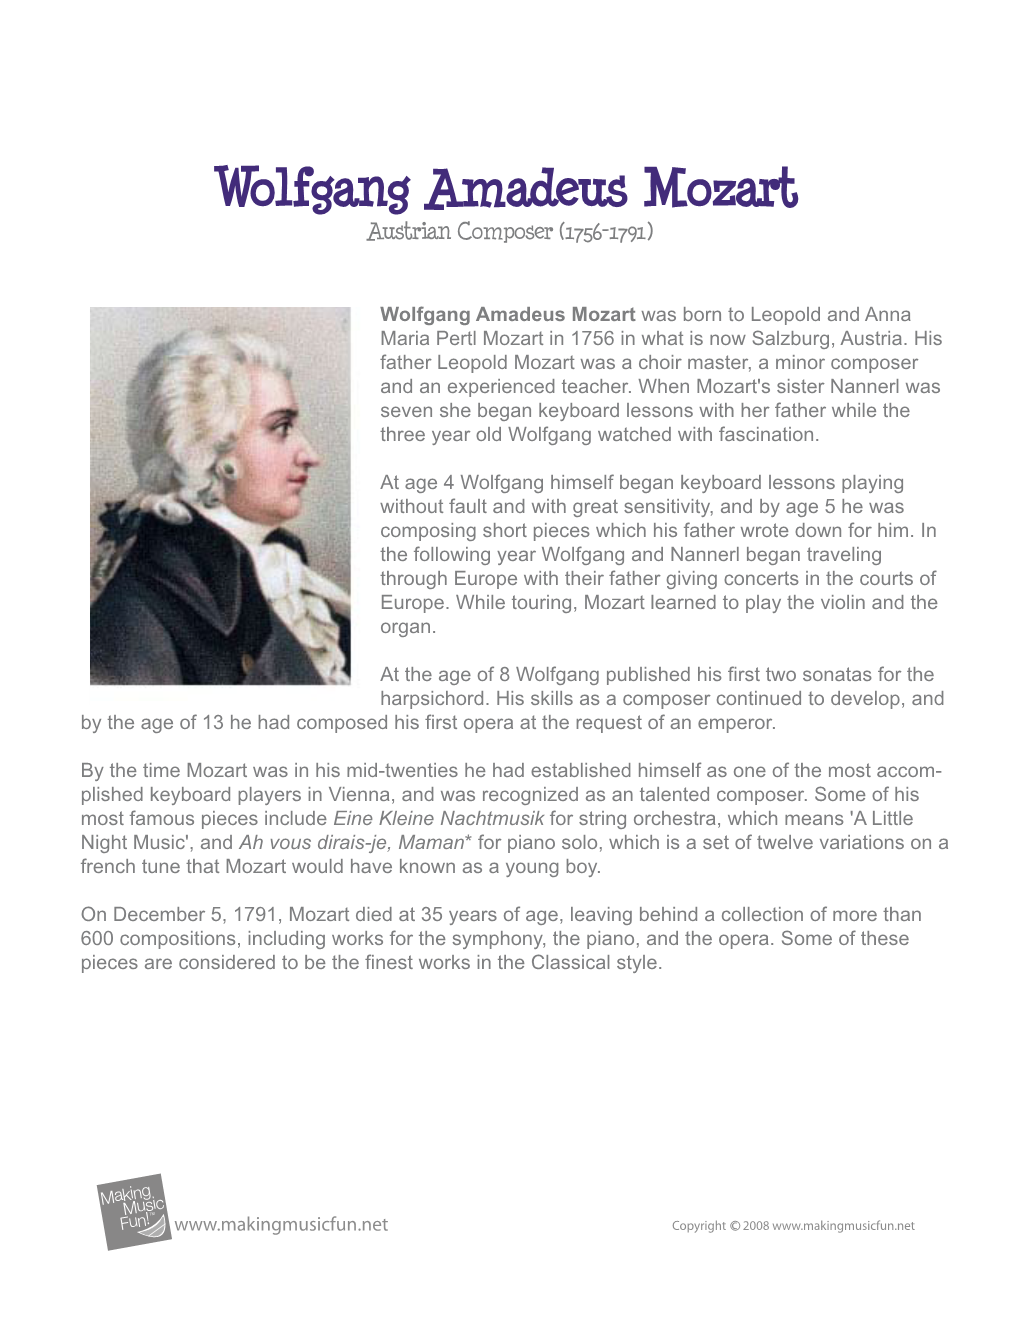 Wolfgang Amadeus Mozart Austrian Composer (1756-1791)